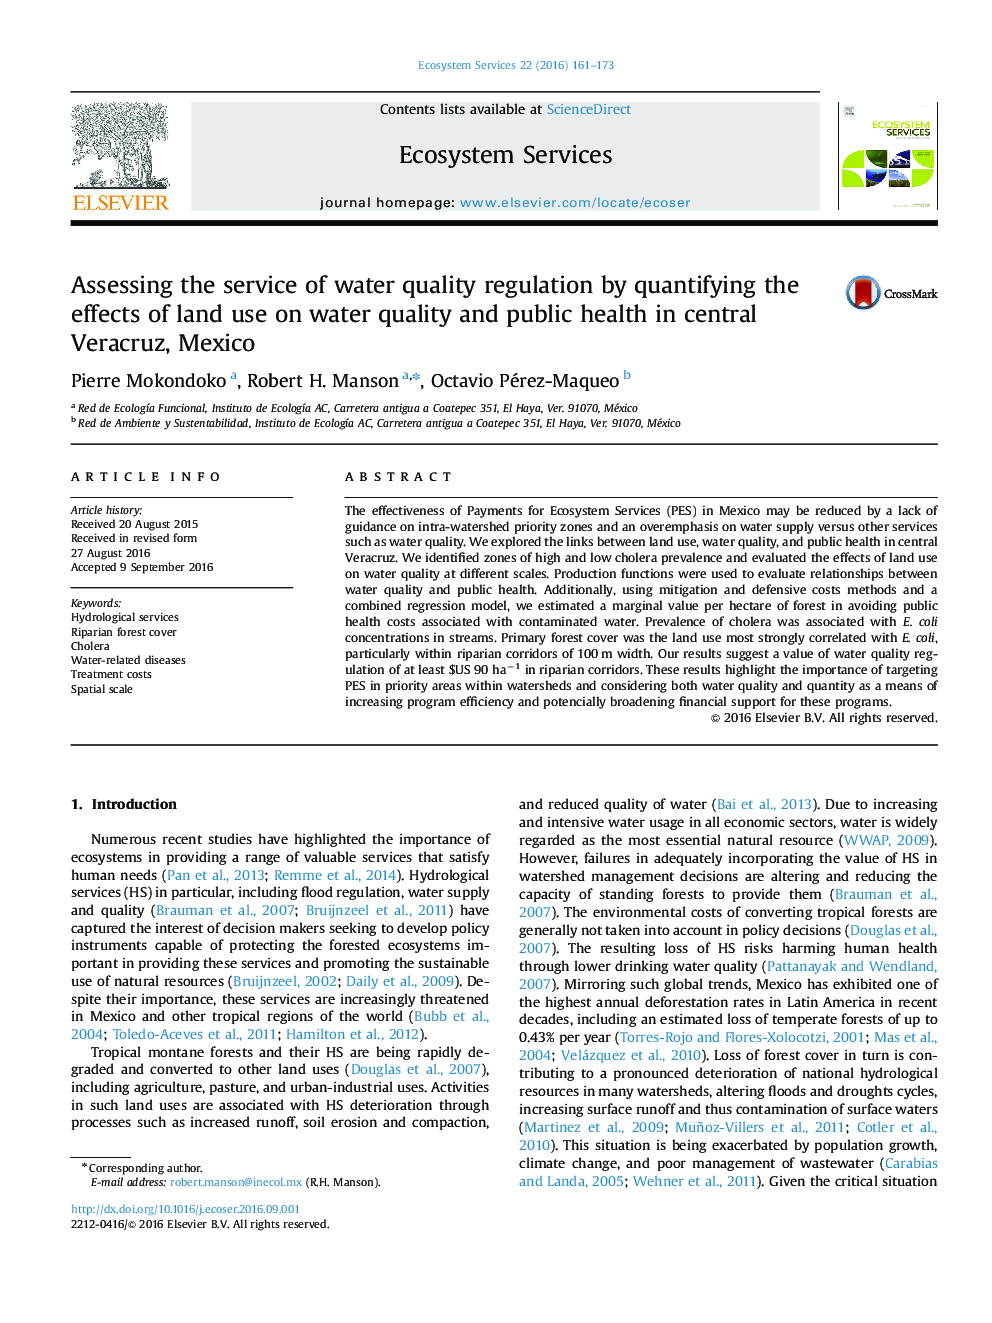 ارزیابی خدمات تنظیم کیفیت آب با کم کردن اثرات استفاده از زمین بر کیفیت آب و بهداشت عمومی در وراکروس مرکزی، مکزیک 